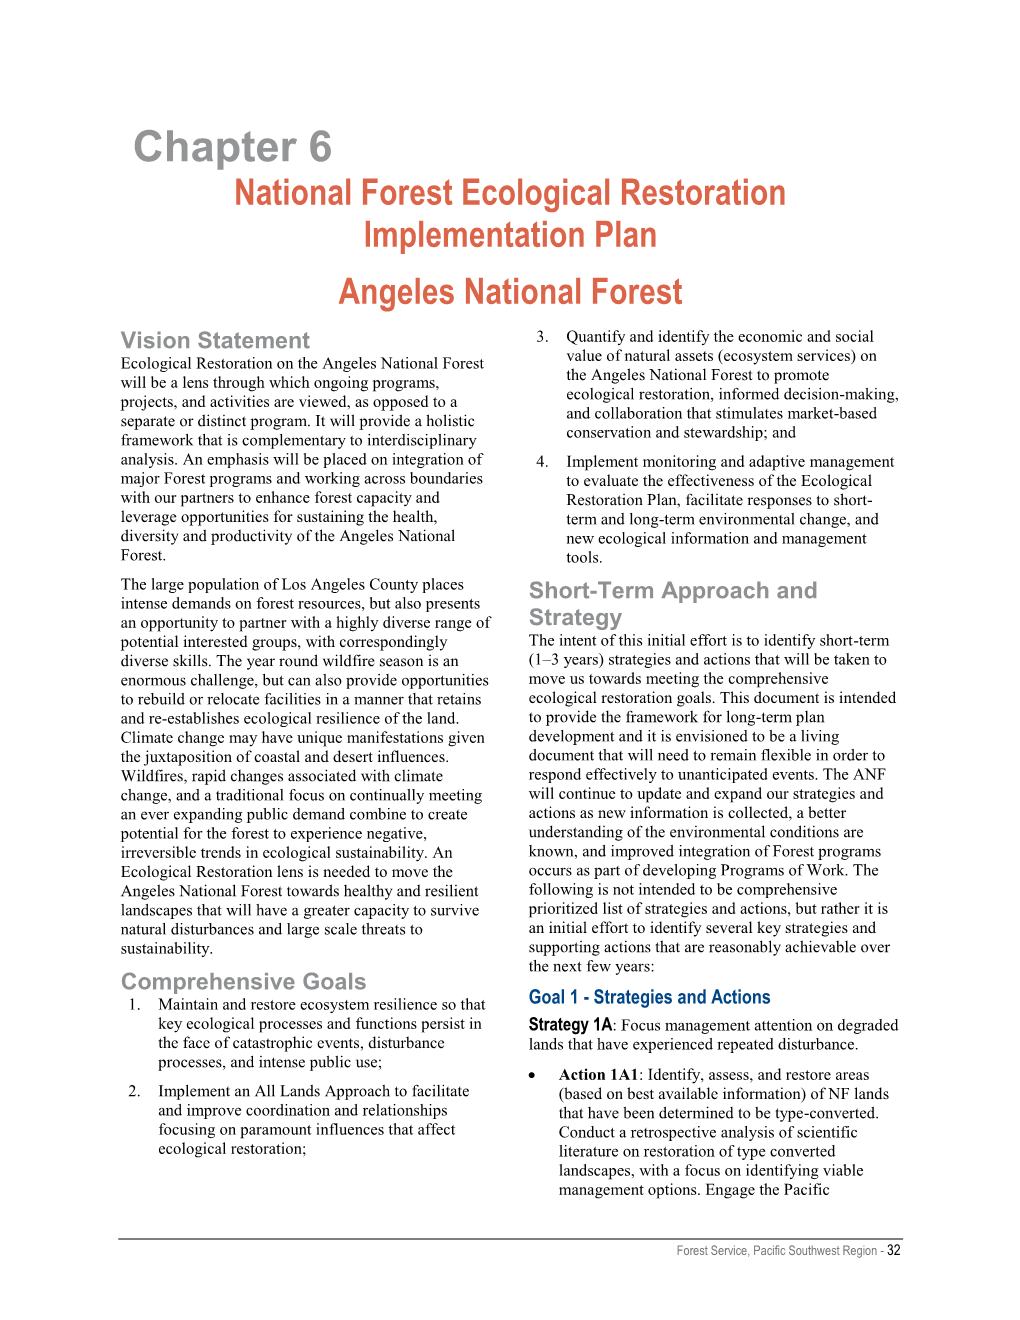 Chapter 6: National Forest Ecological Restoration Implementation Plan